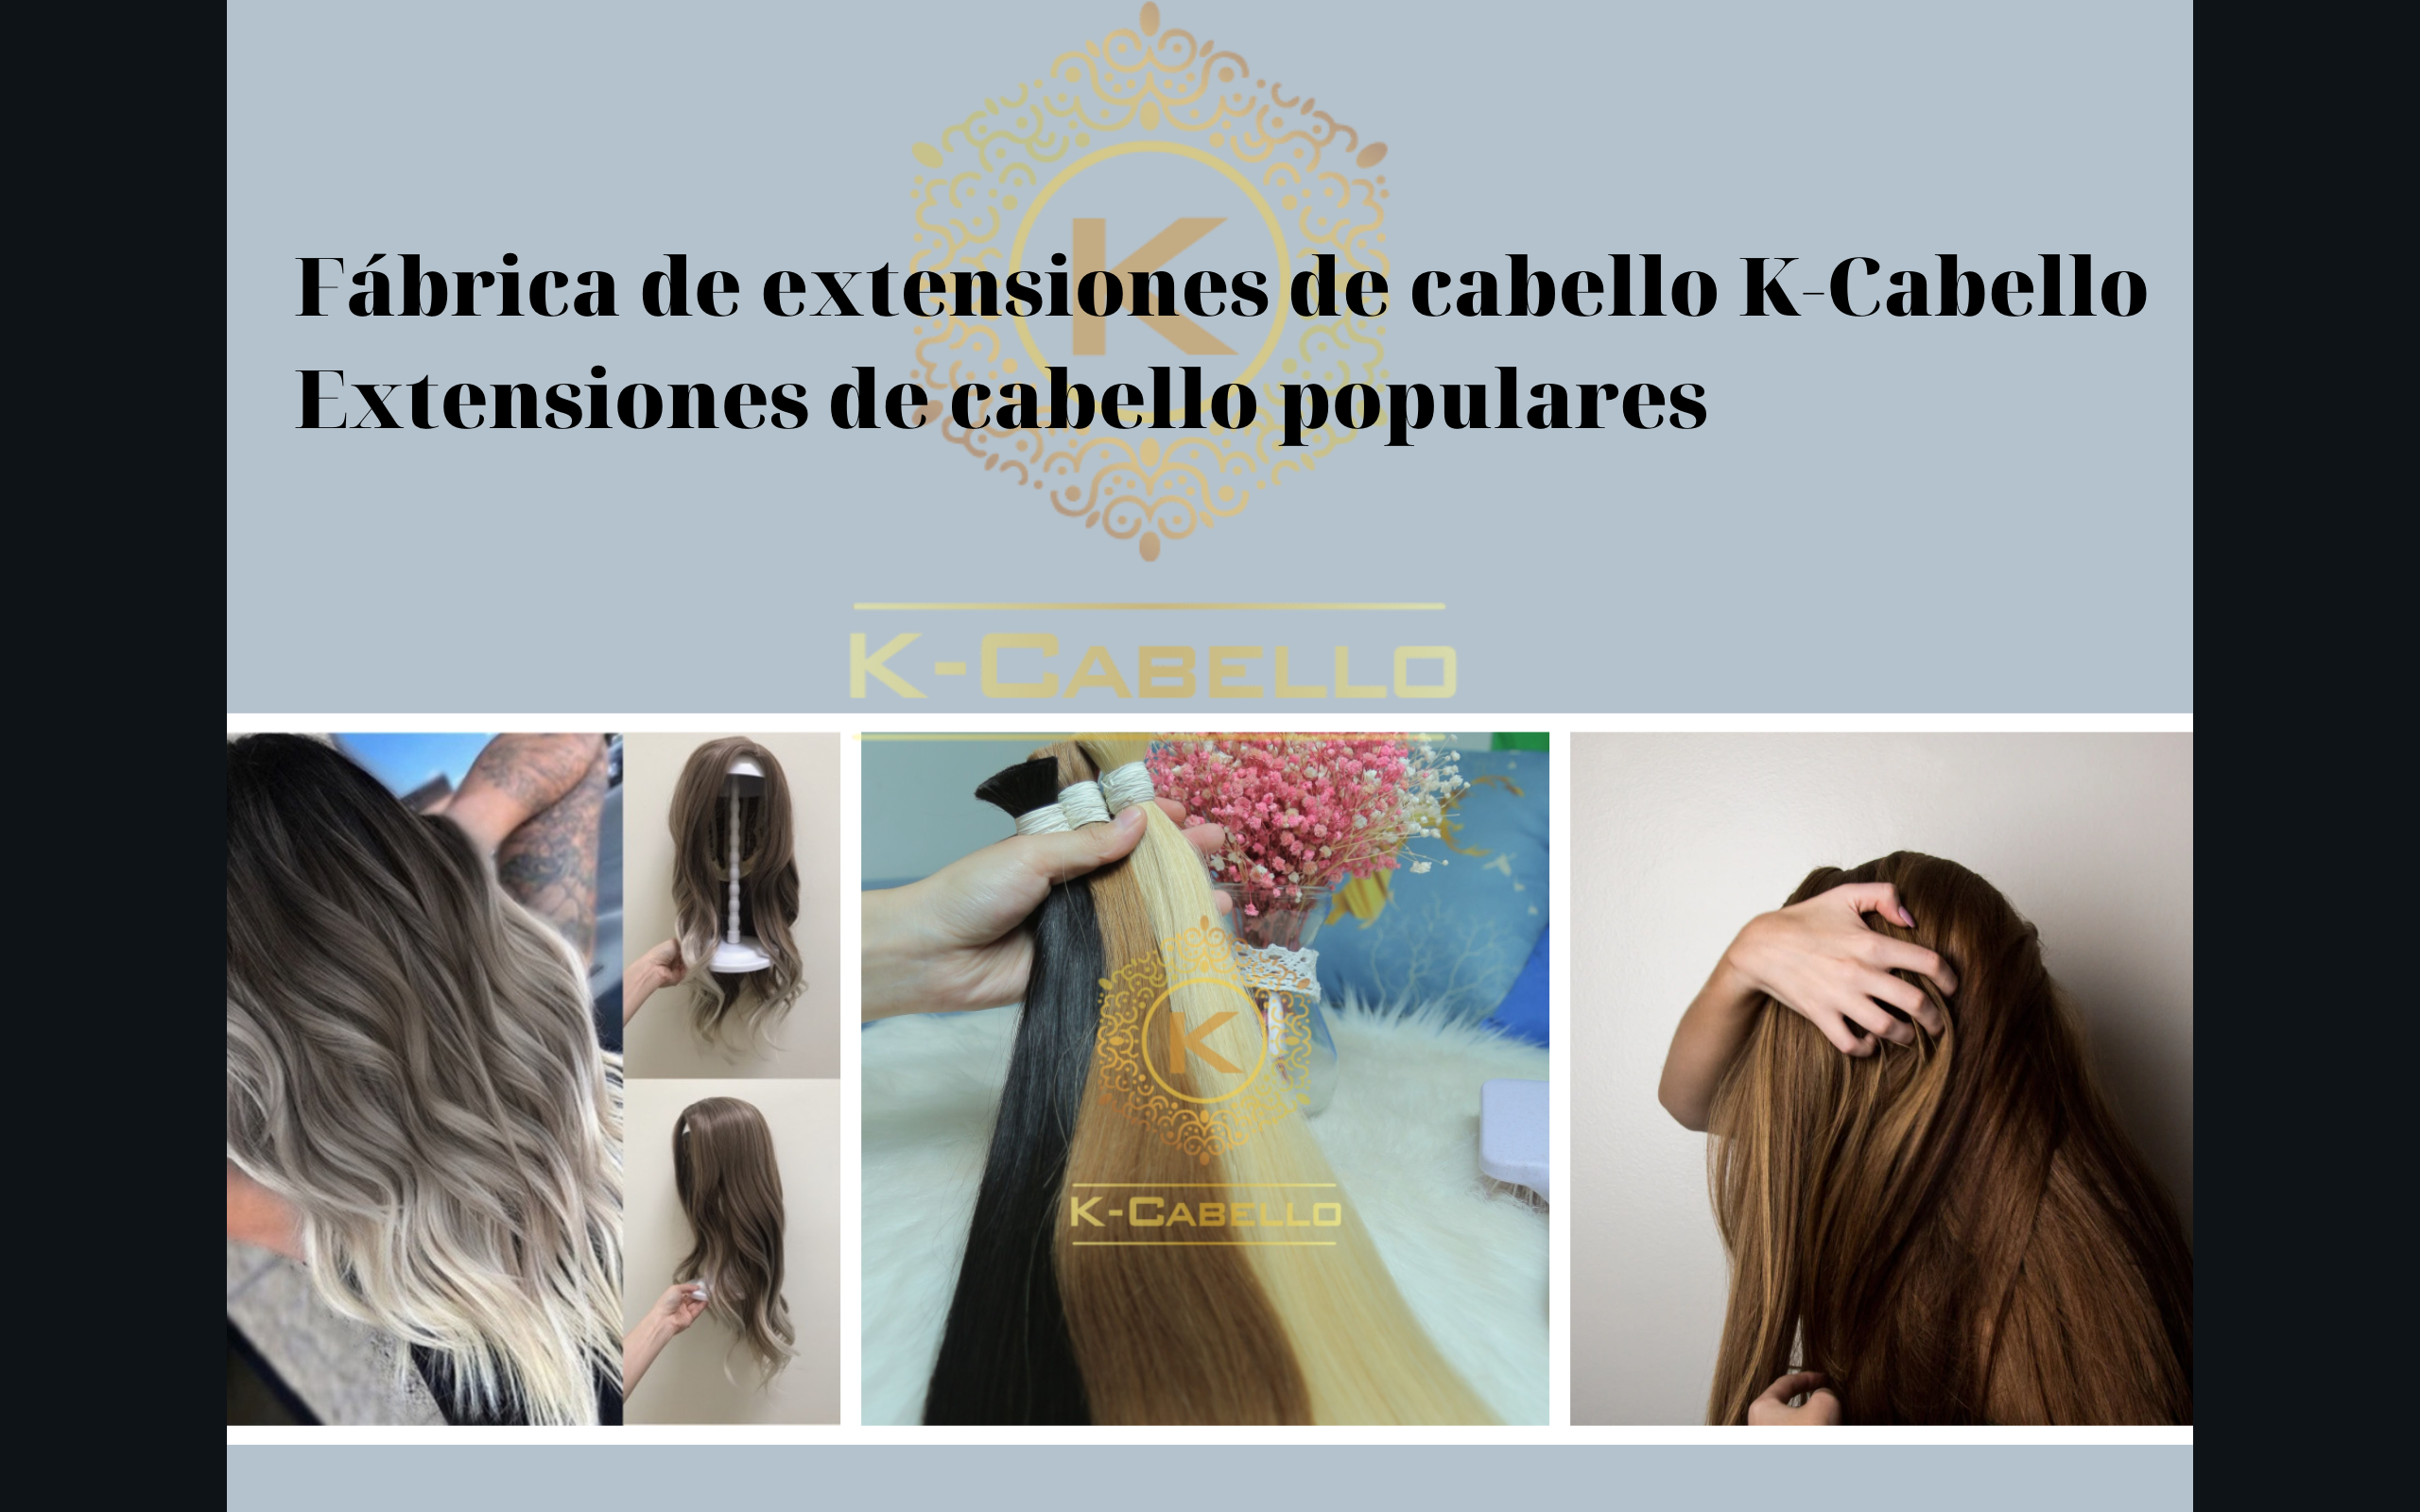 Fabrica-de-extensiones-de-cabello-K-Cabello-y-extensiones-de-cabello-populares